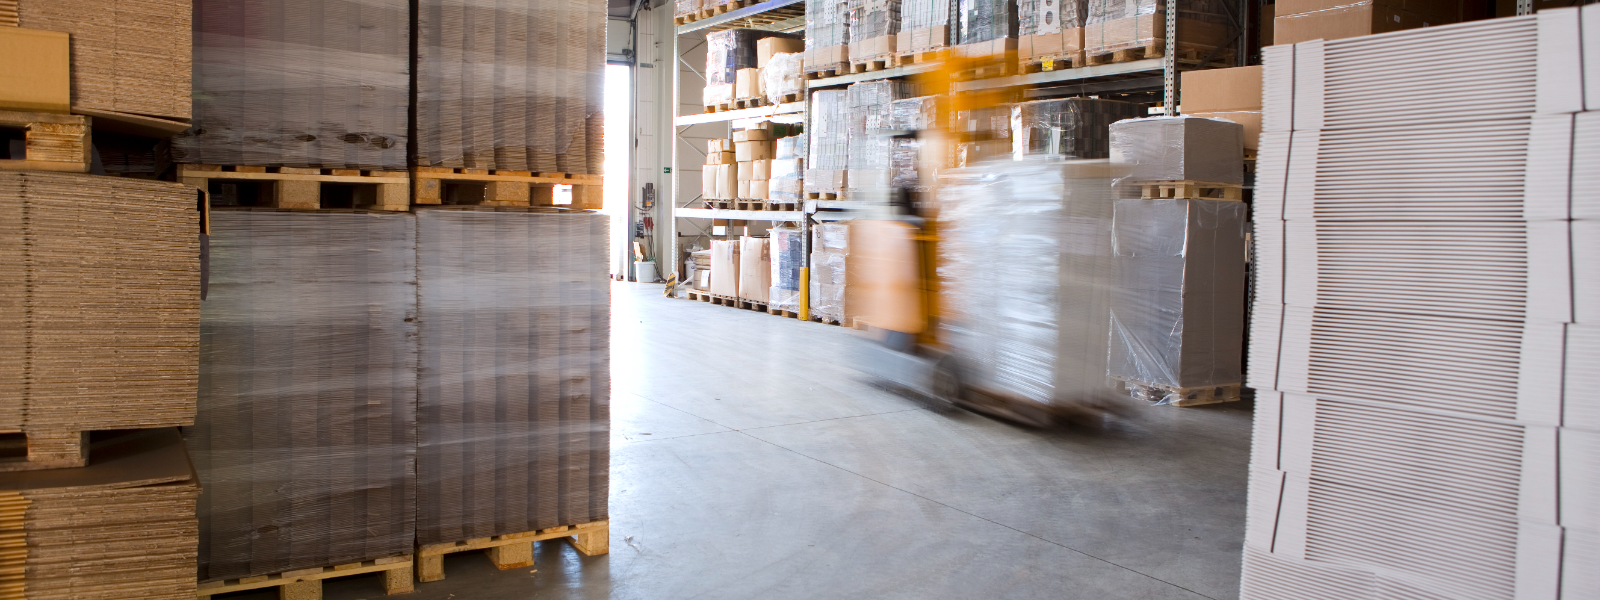 NORDICS OÜ - Pakume täisteenus logistikalahendusi e-kaubandus ettevõtetele.